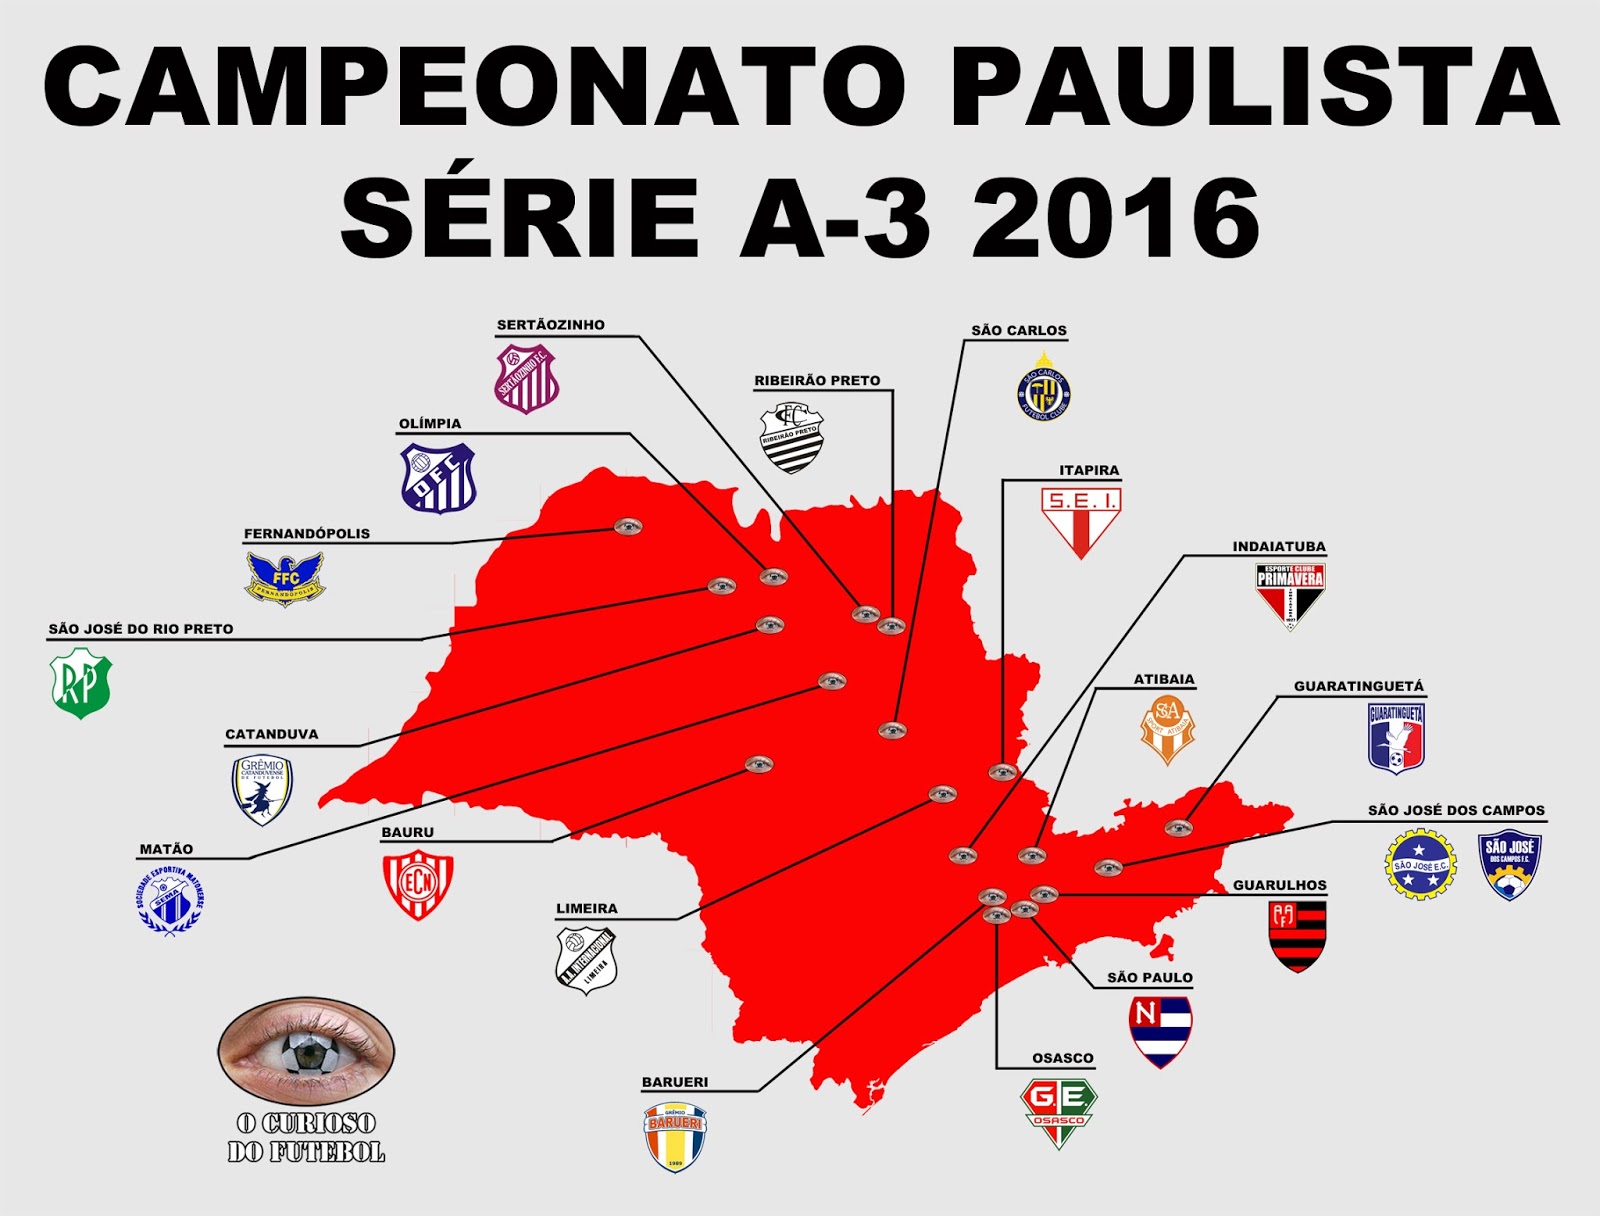 Tabela de classificação do Campeonato Paulista A3! #FutebolPaulista  #PaulistãoA3 #paulista #futebol #soccer #campeonatopa…